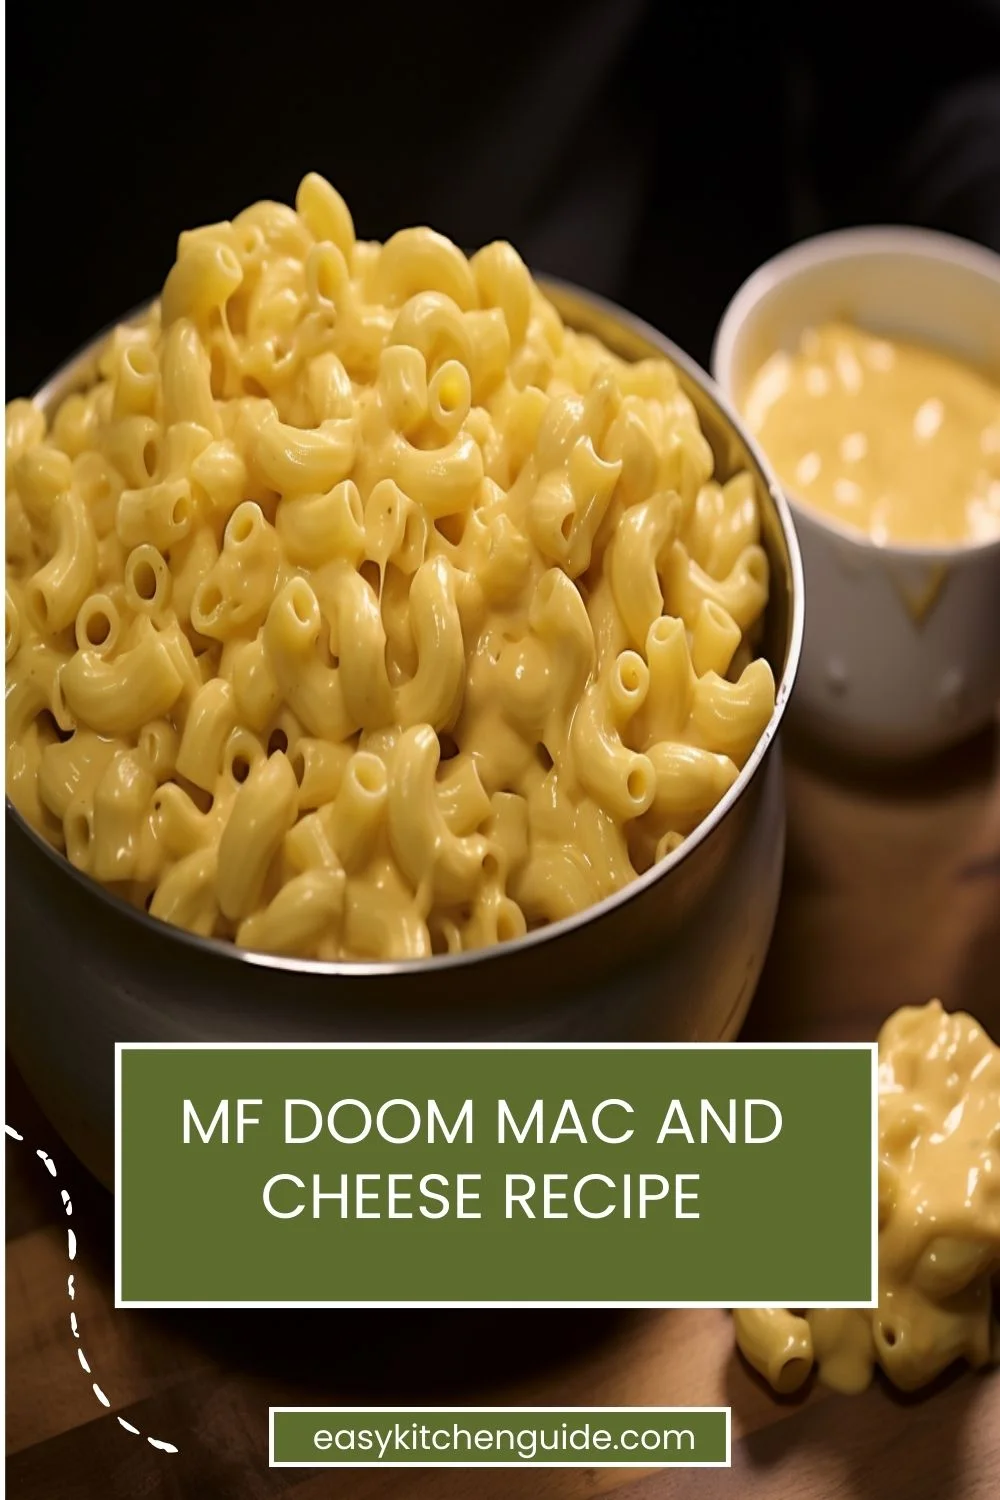 MF Doom Mac and Cheese Recipe